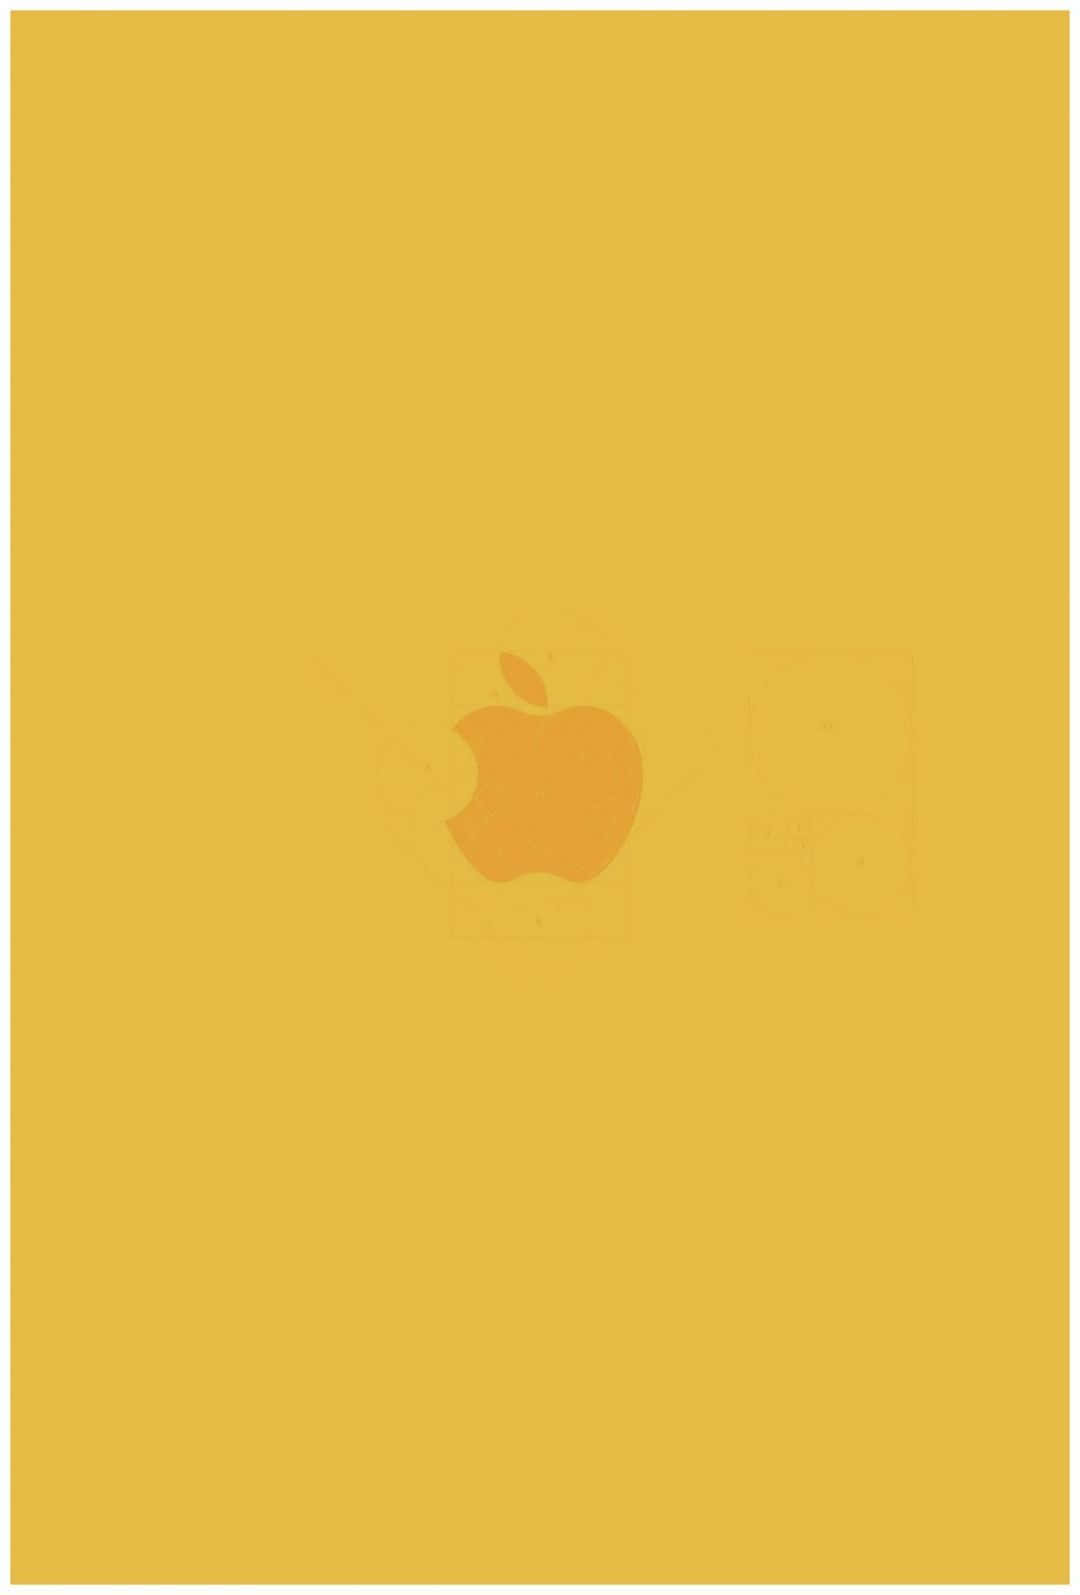 Genießensie Die Sonnendurchfluteten Vibes Des Yellow Aesthetic Mit Dem Iphone. Wallpaper